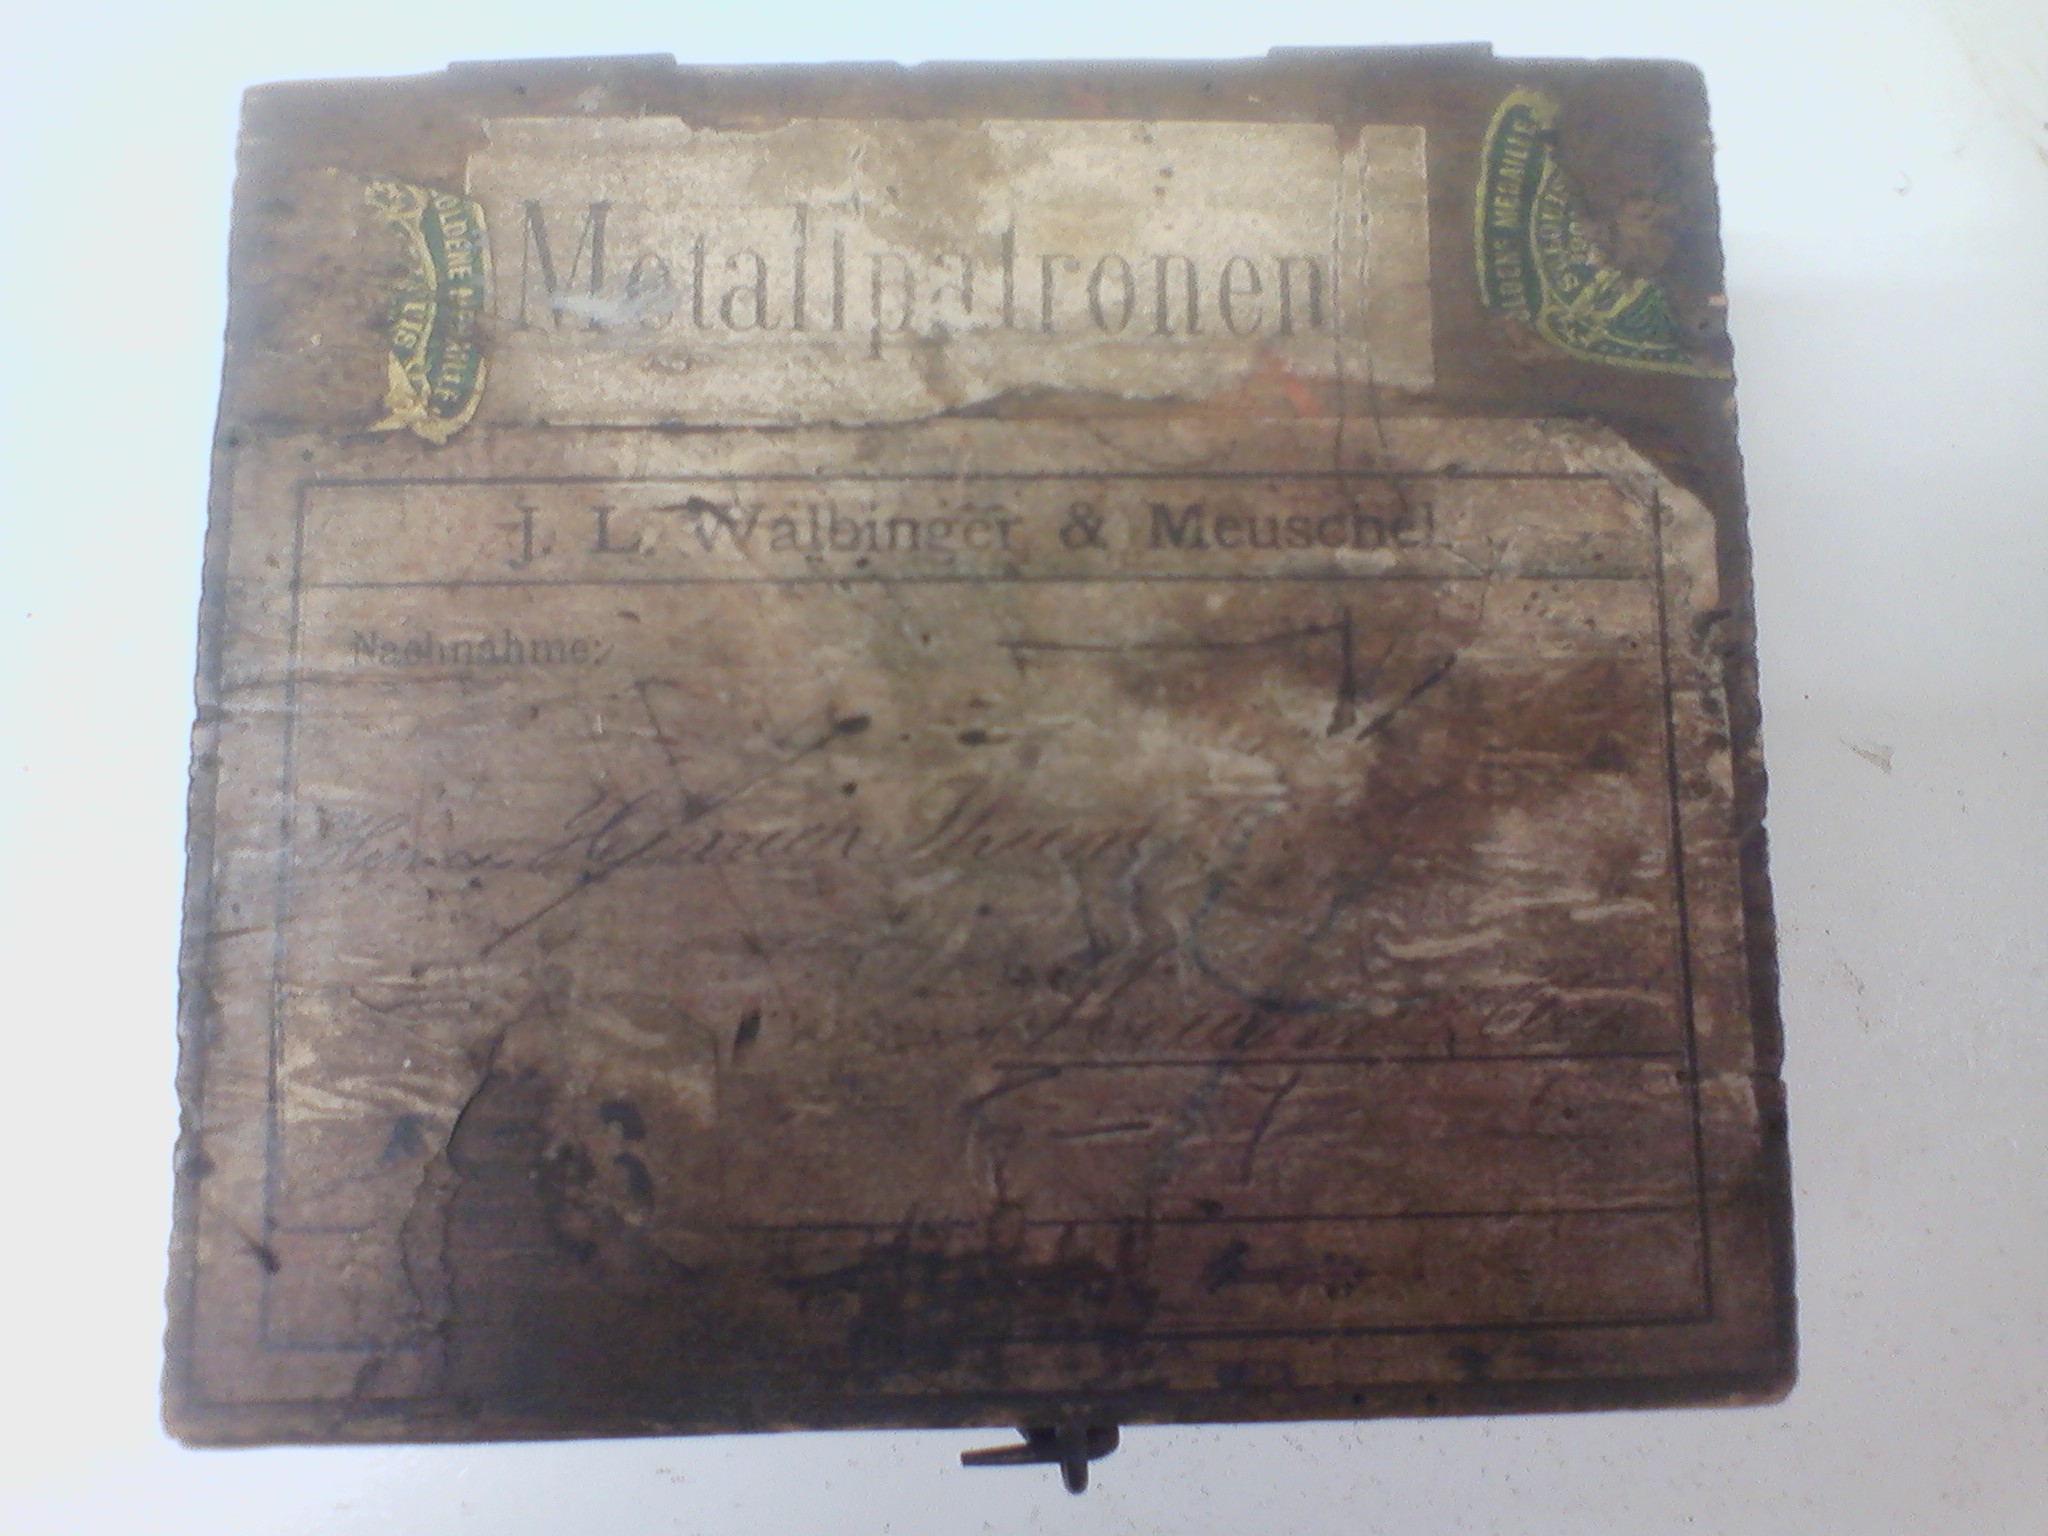 20140819_sbírka 9_bedýnka_Metallpatronen J L Walbinger & Meuschel (1)